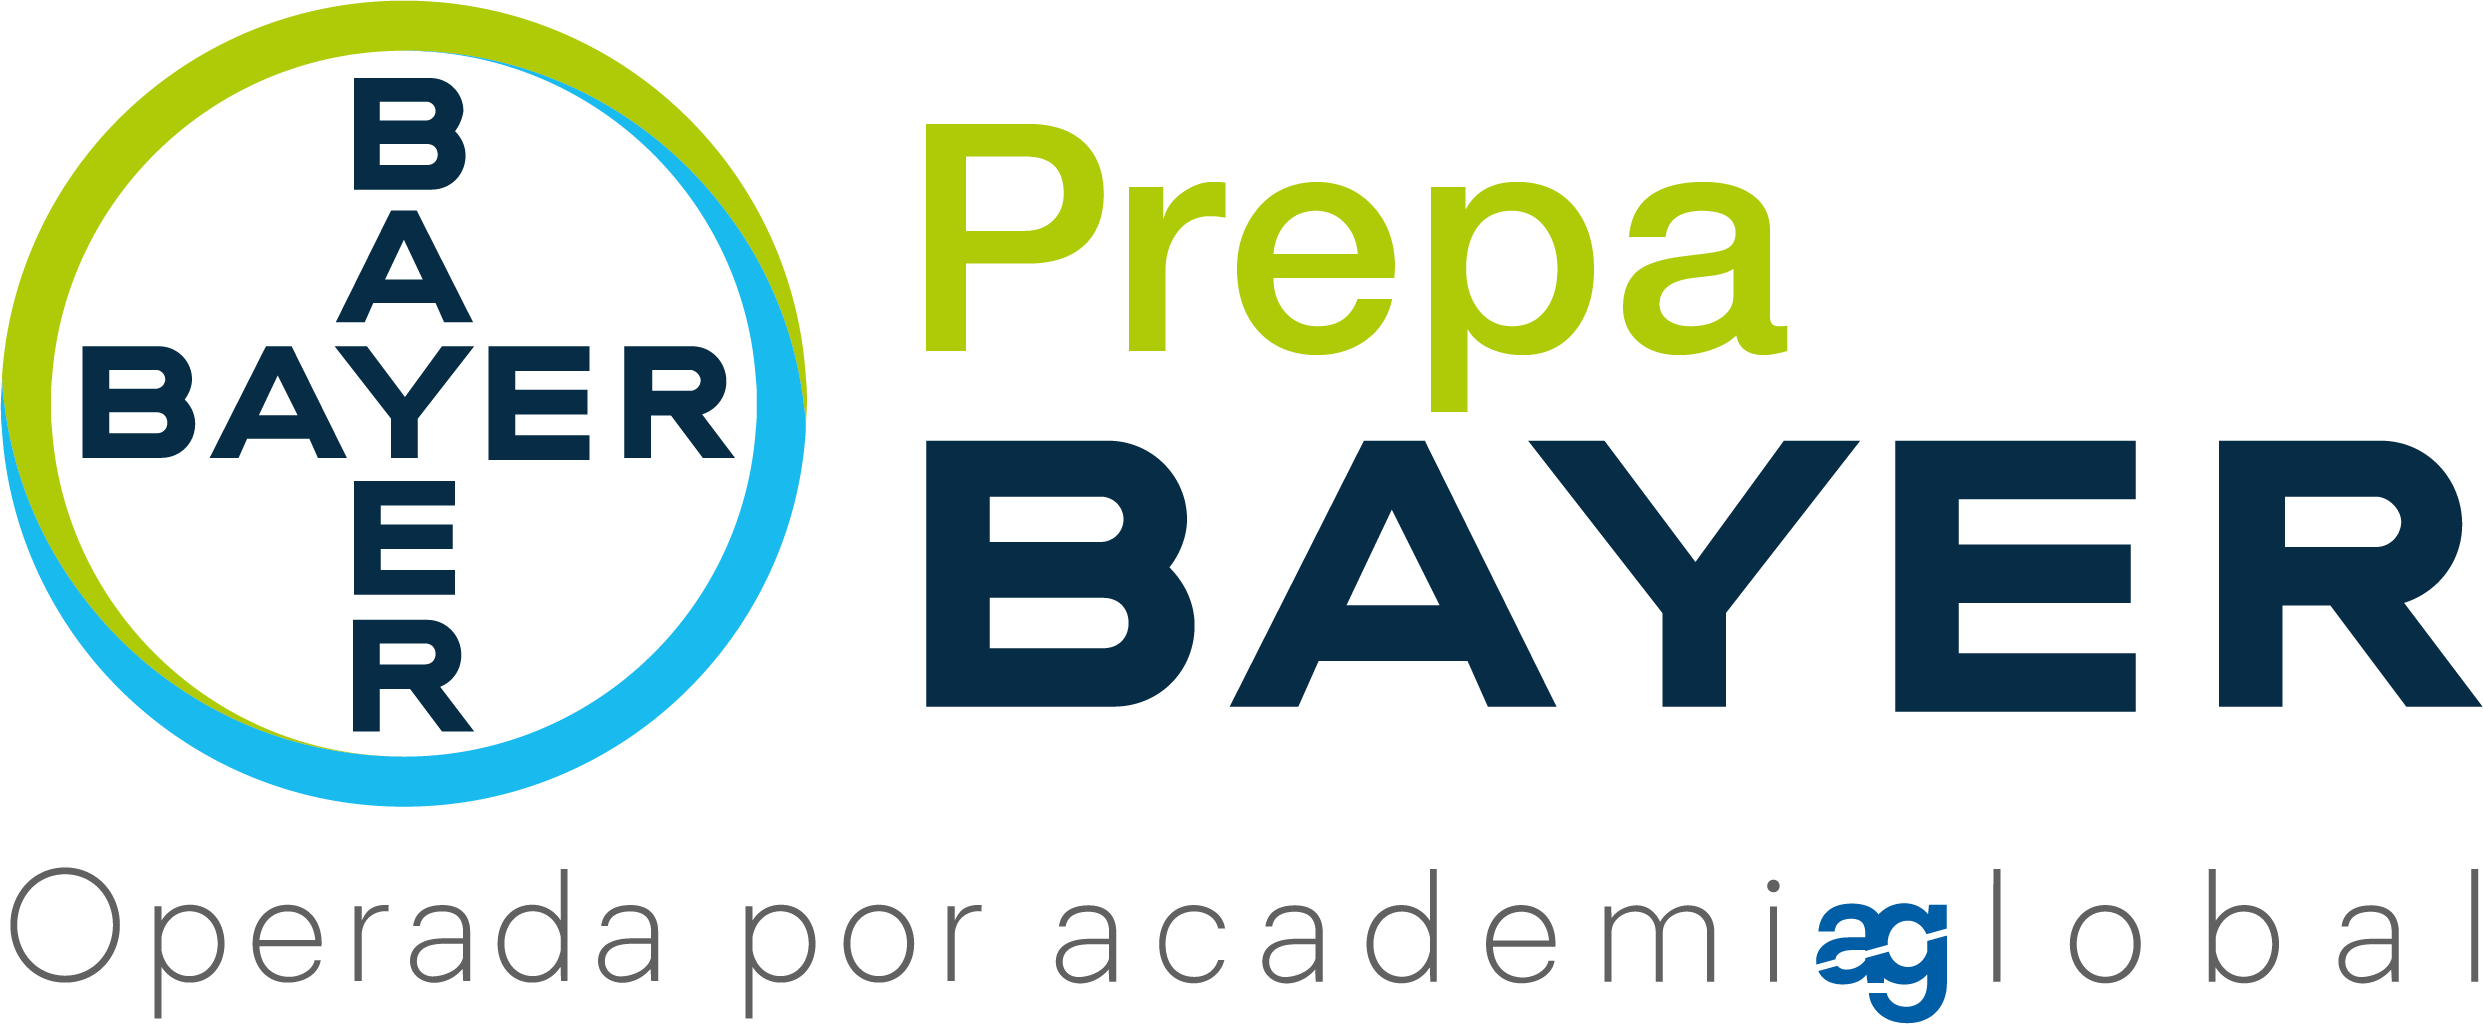 Logo de prepa bayer